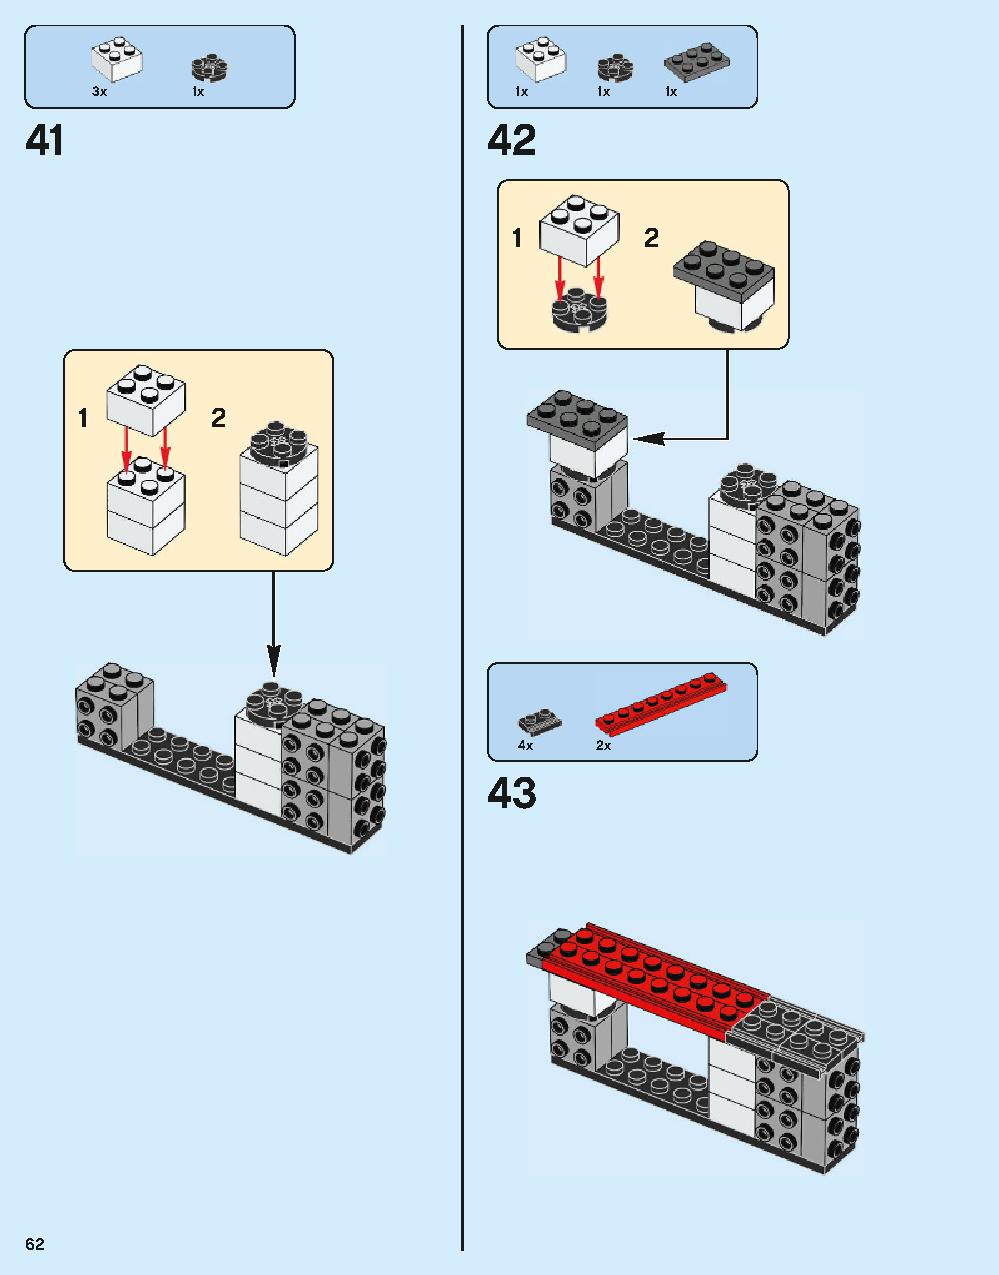 ホグワーツ特急 75955 レゴの商品情報 レゴの説明書・組立方法 62 page